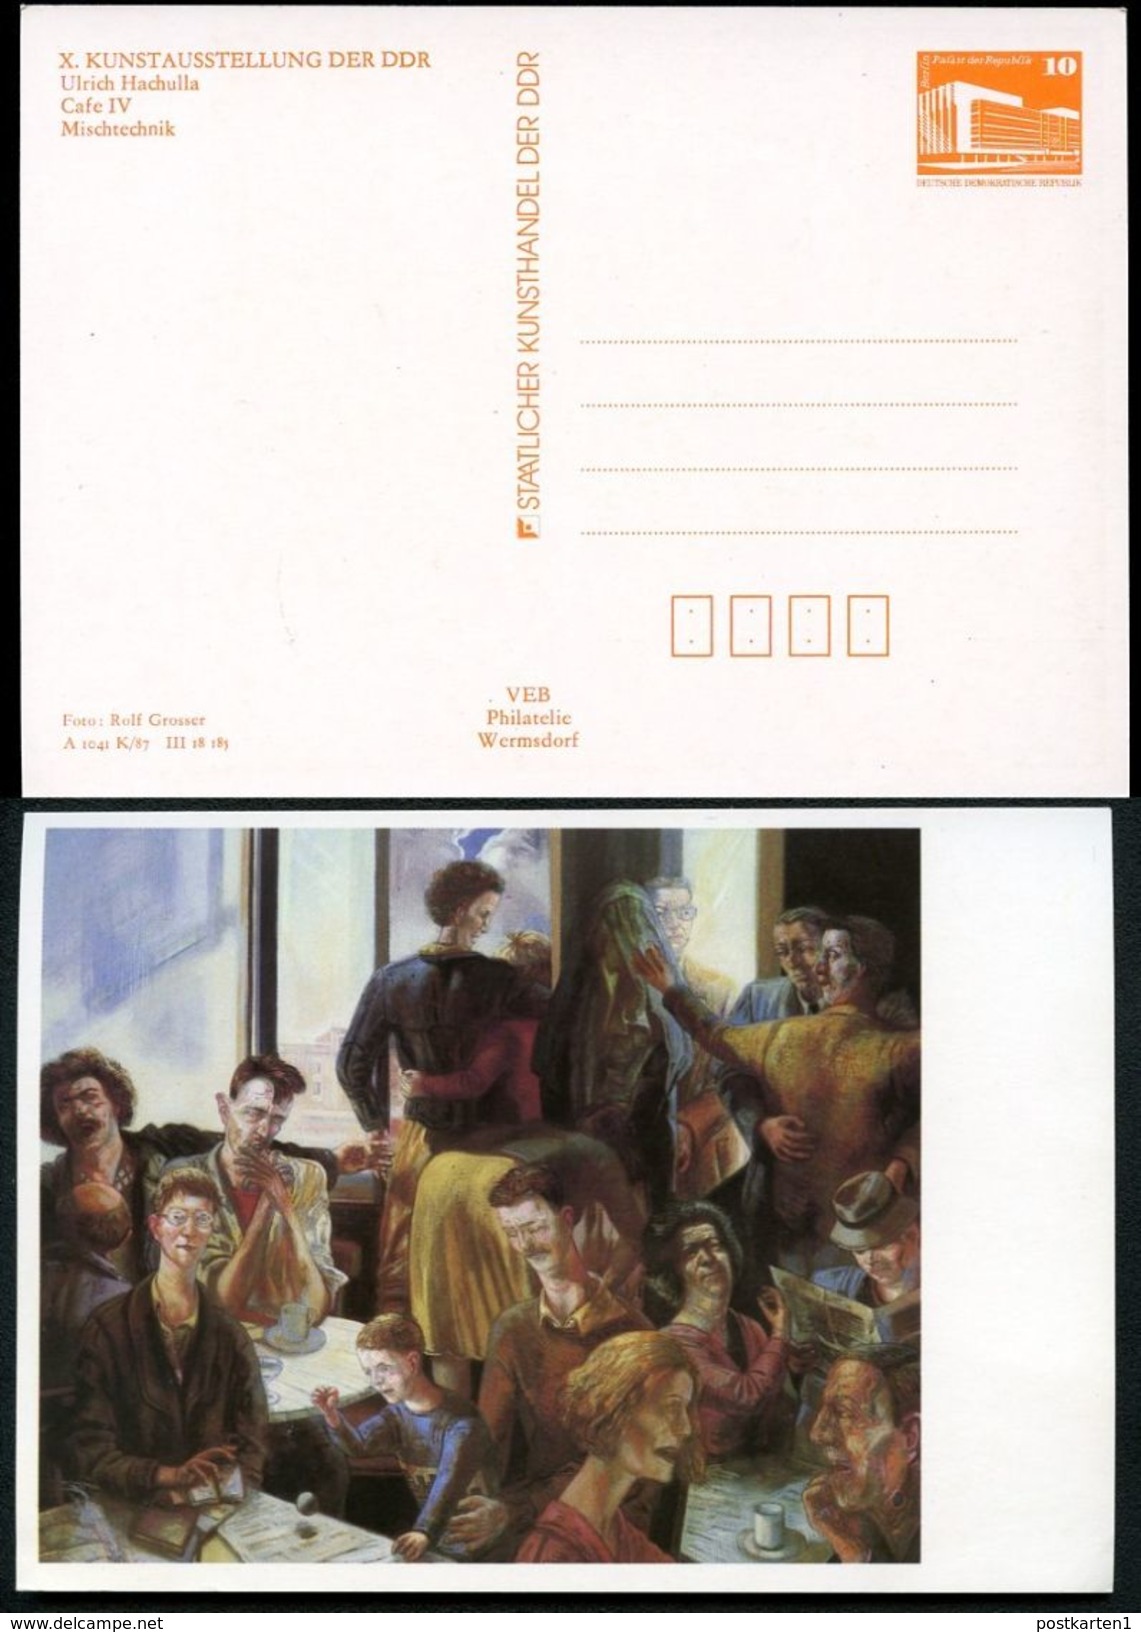 DDR Privat-Postkarte PP19 B1/012-1b KUNSTAUSSTELLUNG DRESDEN 1987  NGK 3,00 € - Cartes Postales Privées - Neuves